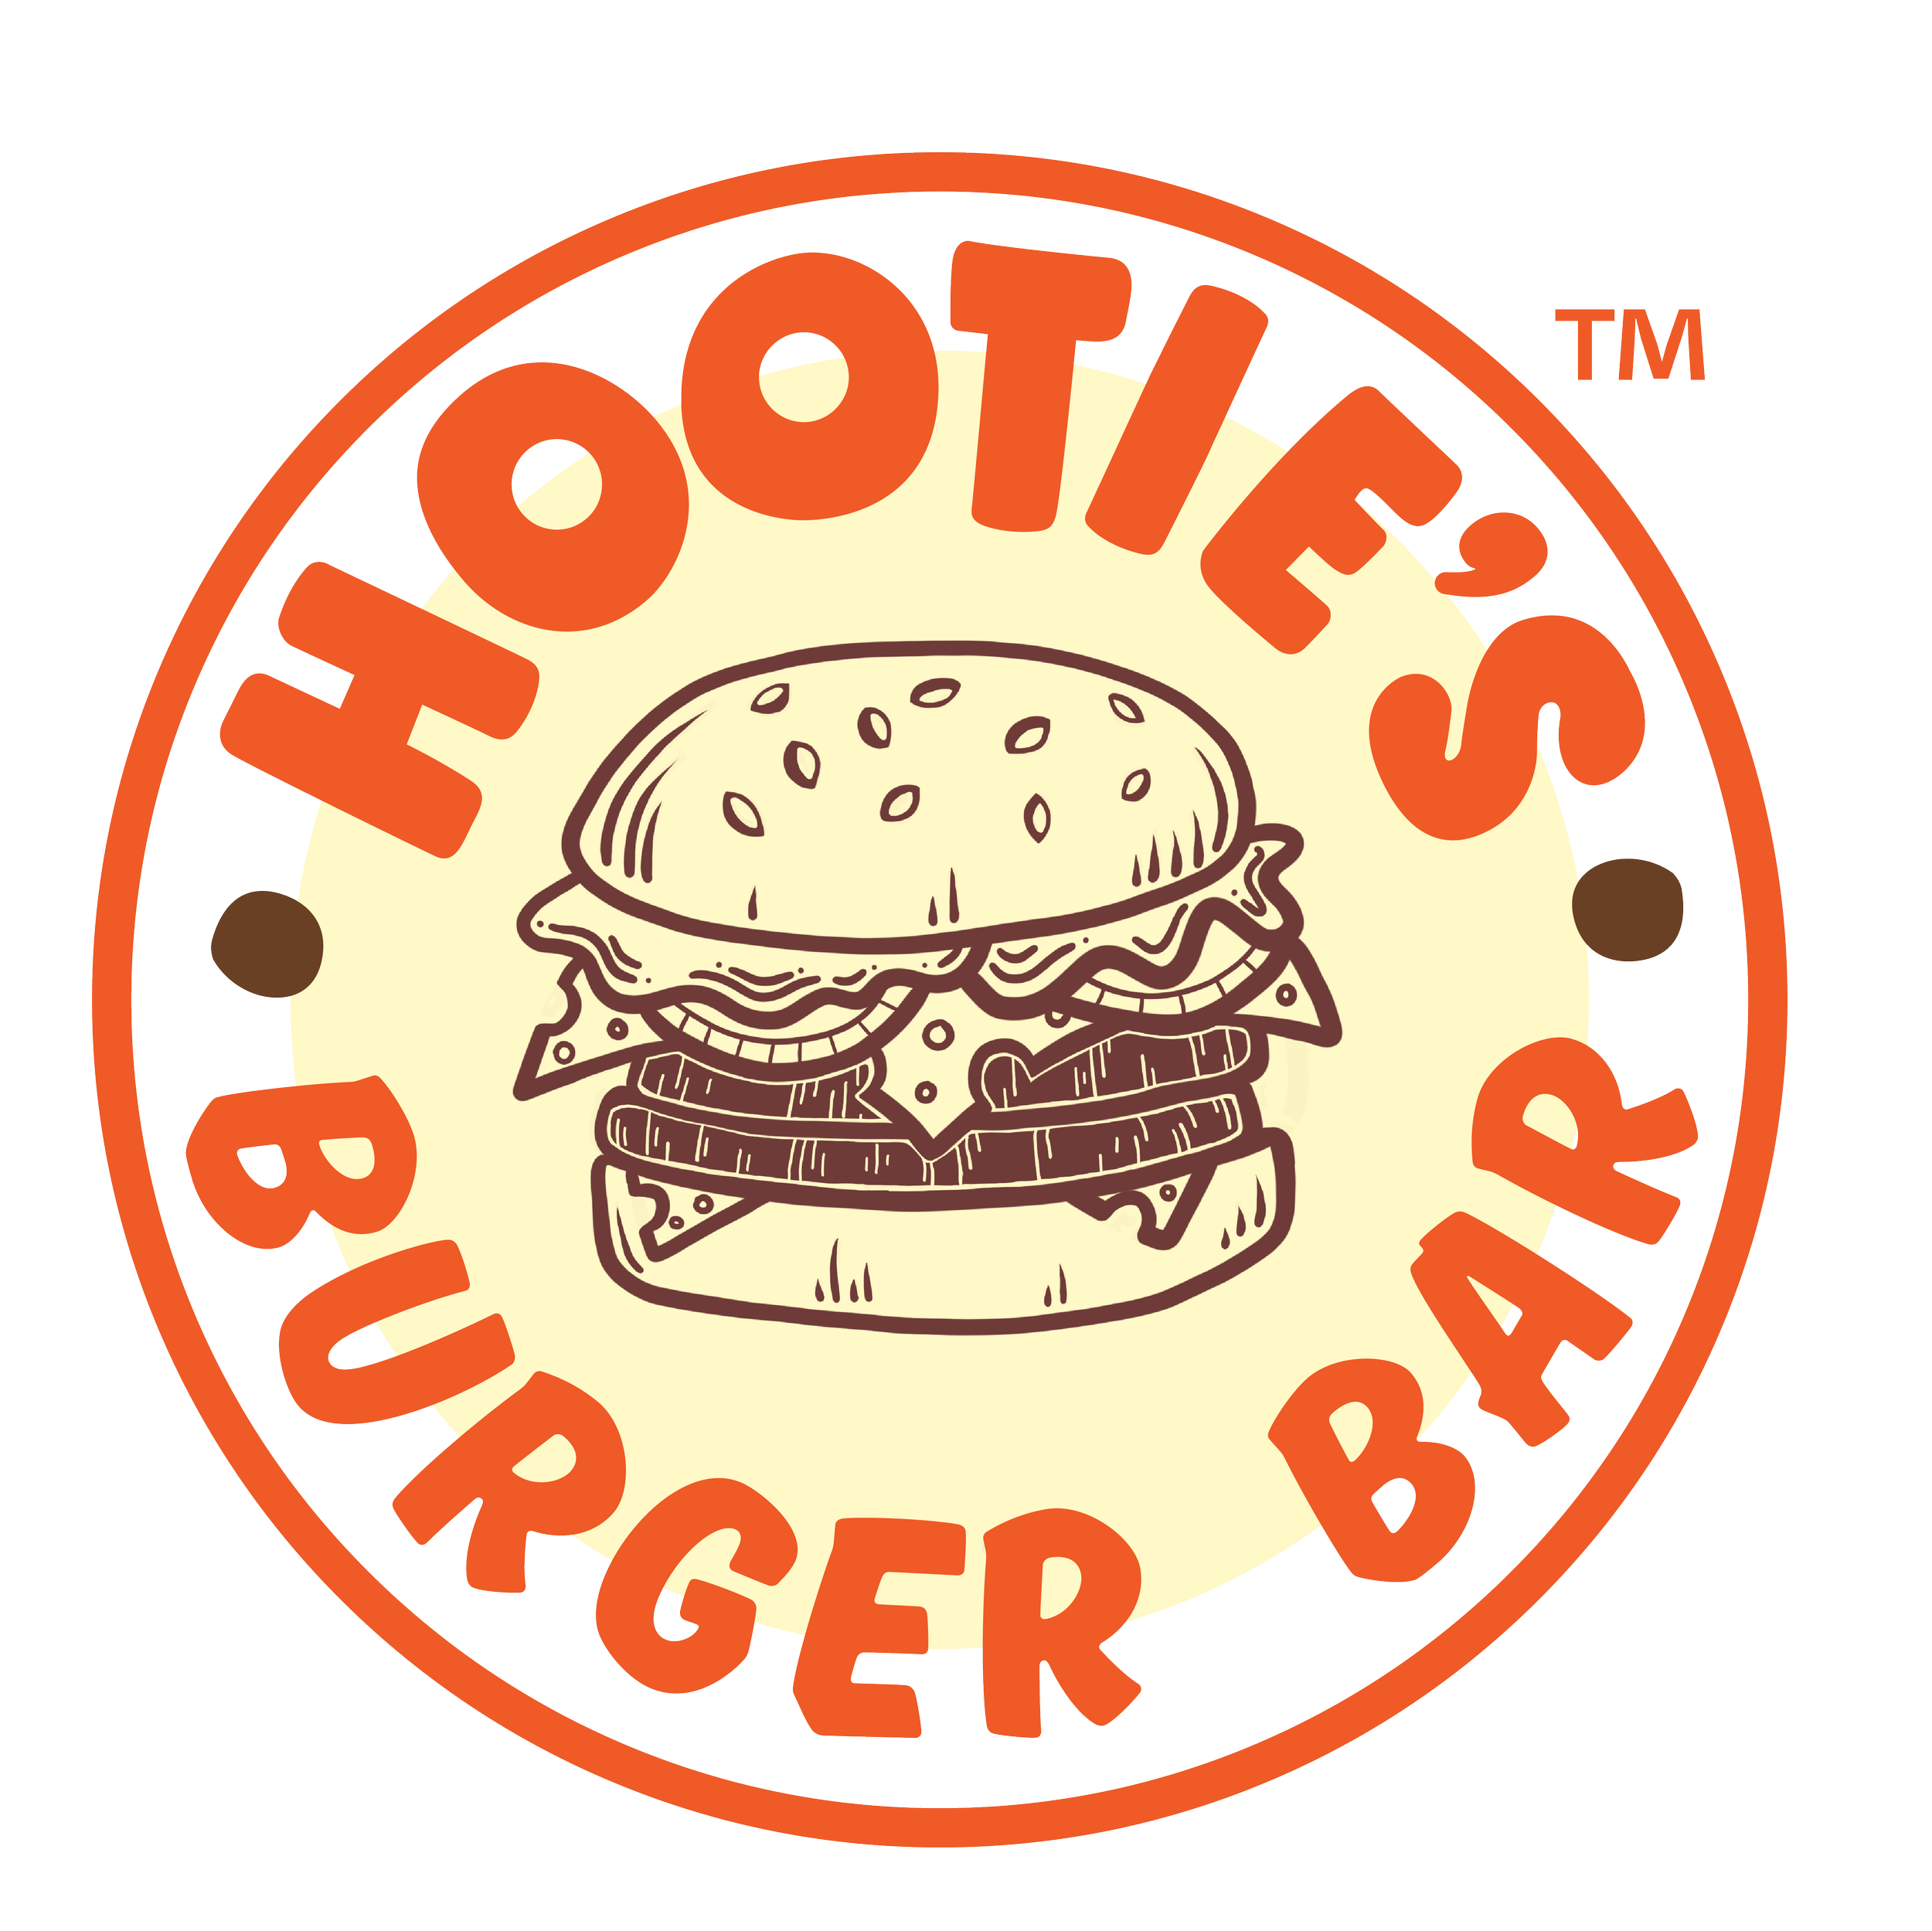 Hootie's Burger Bar - Ghost Kitchen